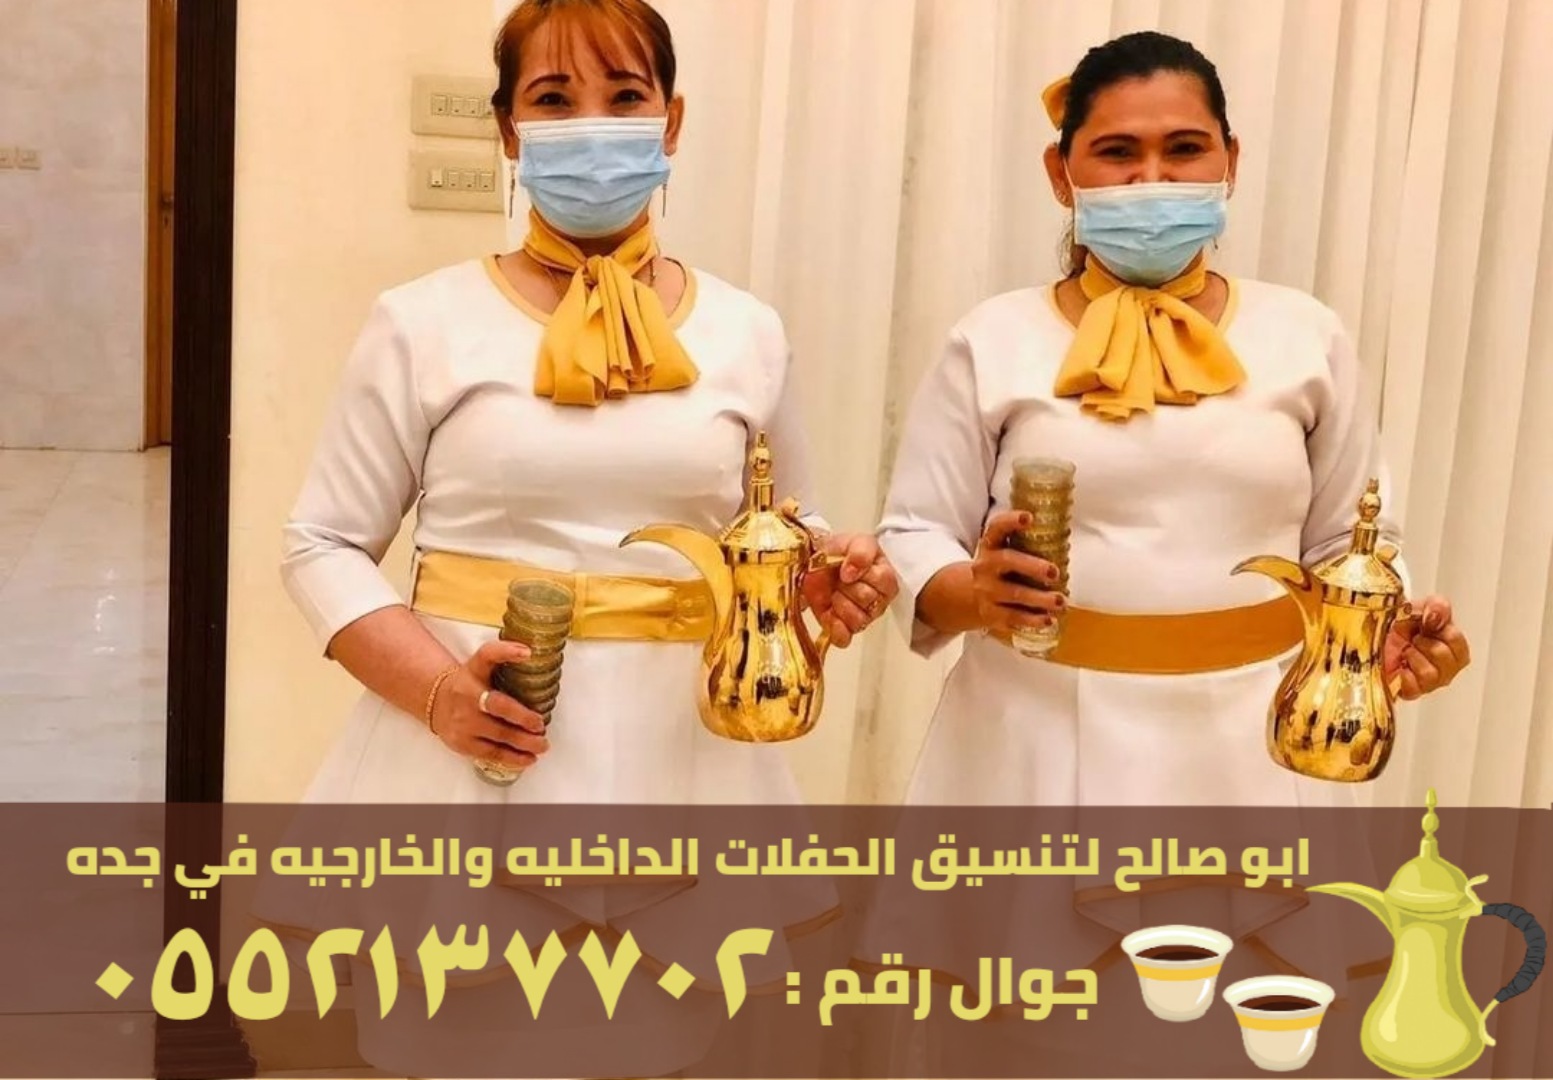 مباشرين قهوة وشاي وقهوجيات في جدة, 0552137702 P_2456wy8op5